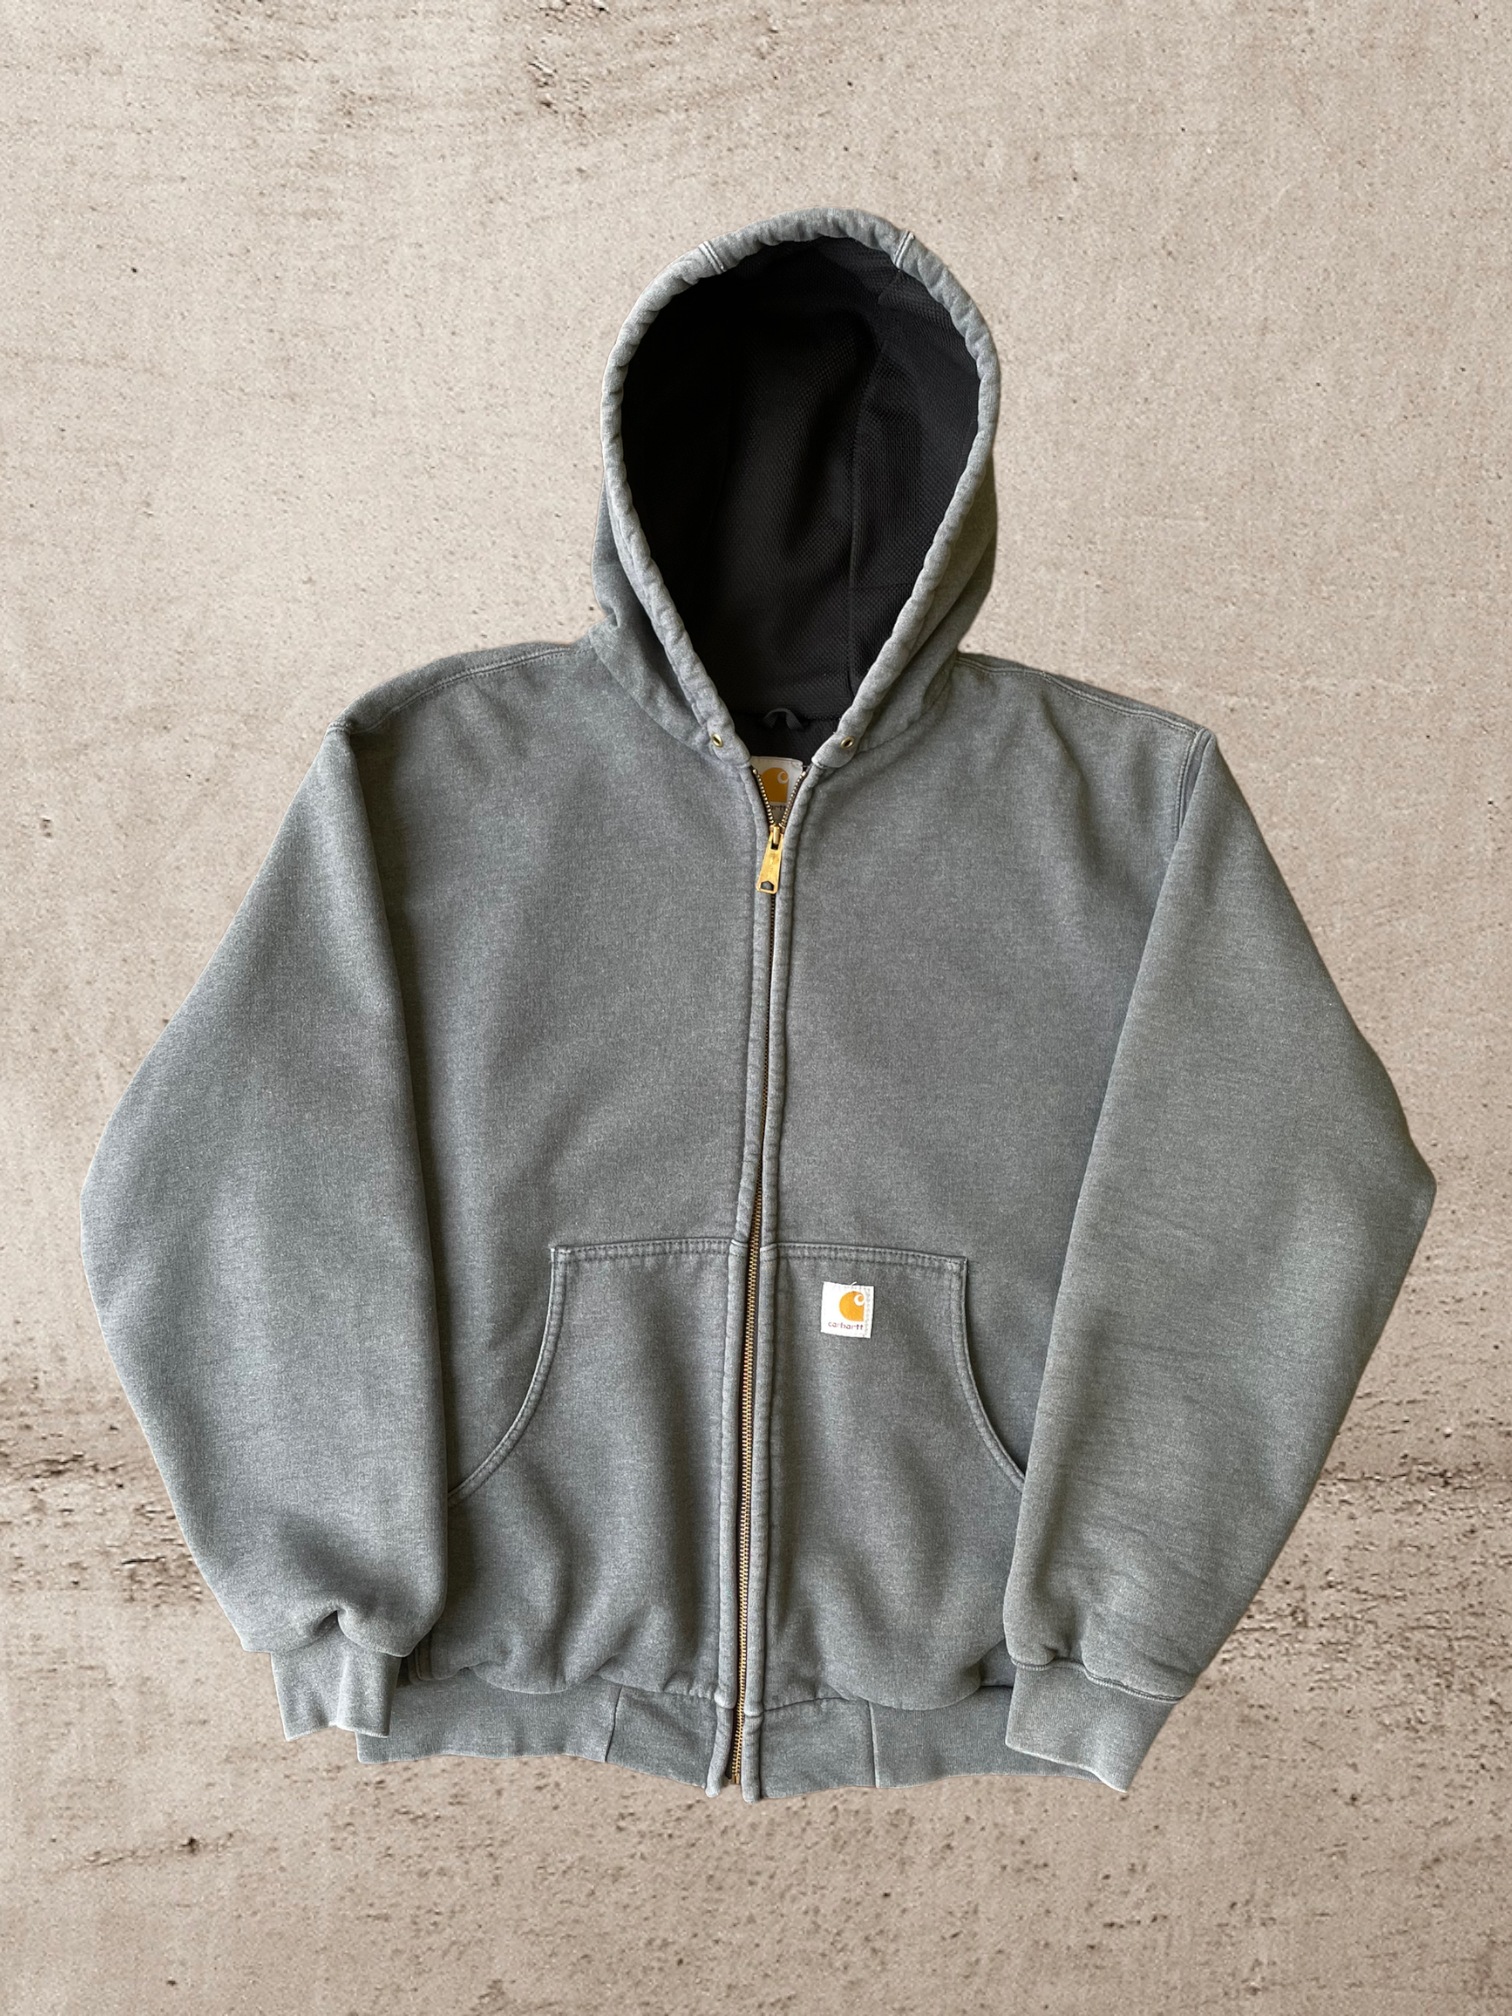 90s Carhartt Zip Up Sweatshirt - XL